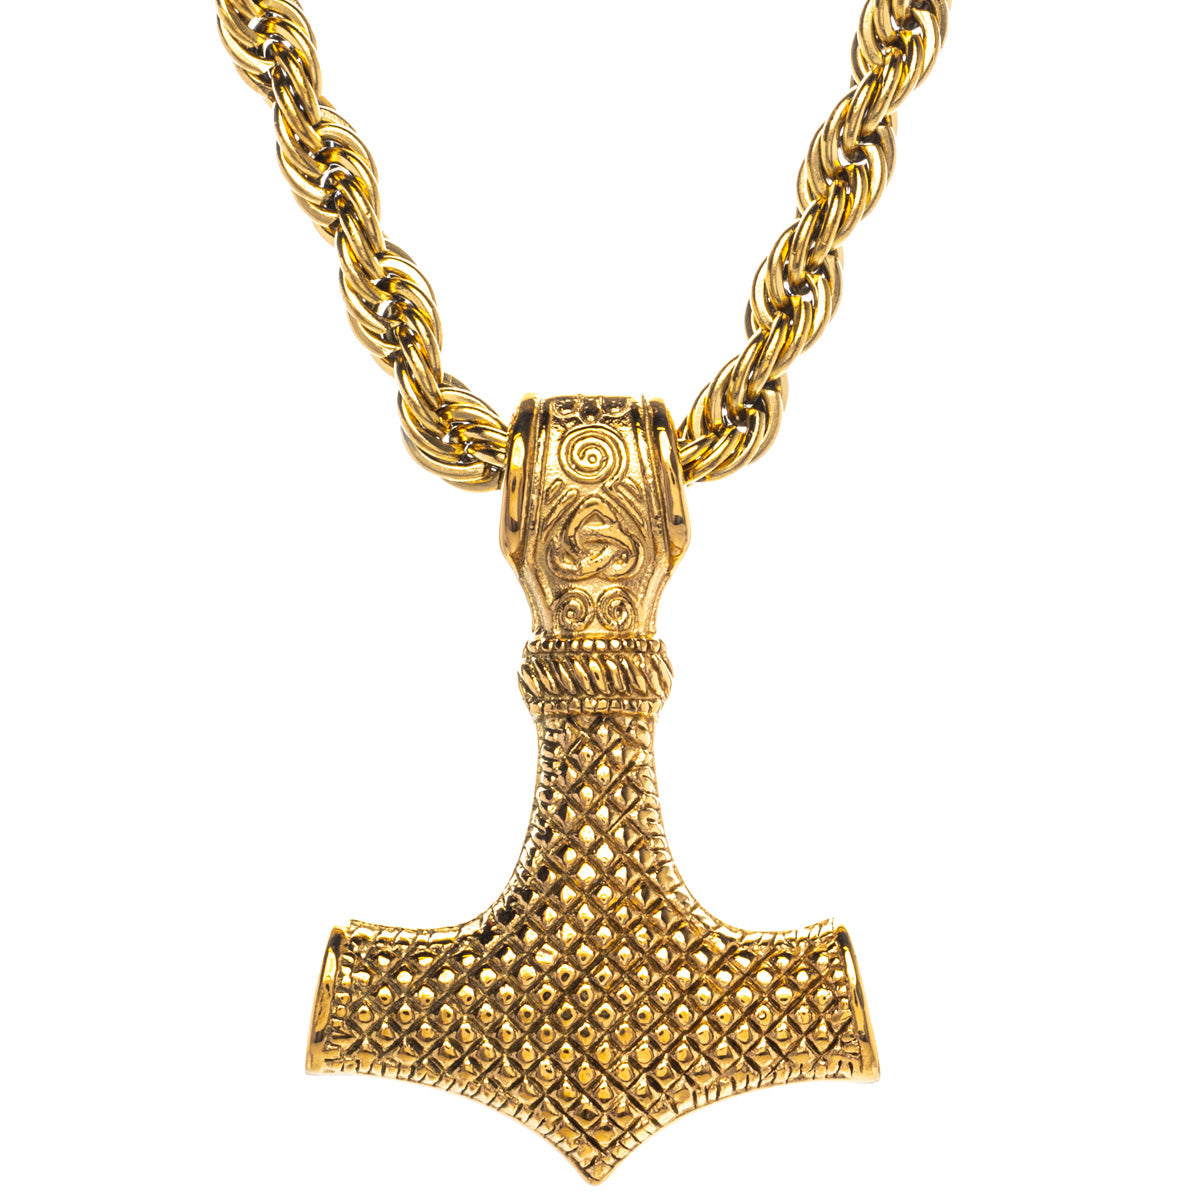 Gold Mjölnir Thor's hammer pendant necklace (Steel 316L)